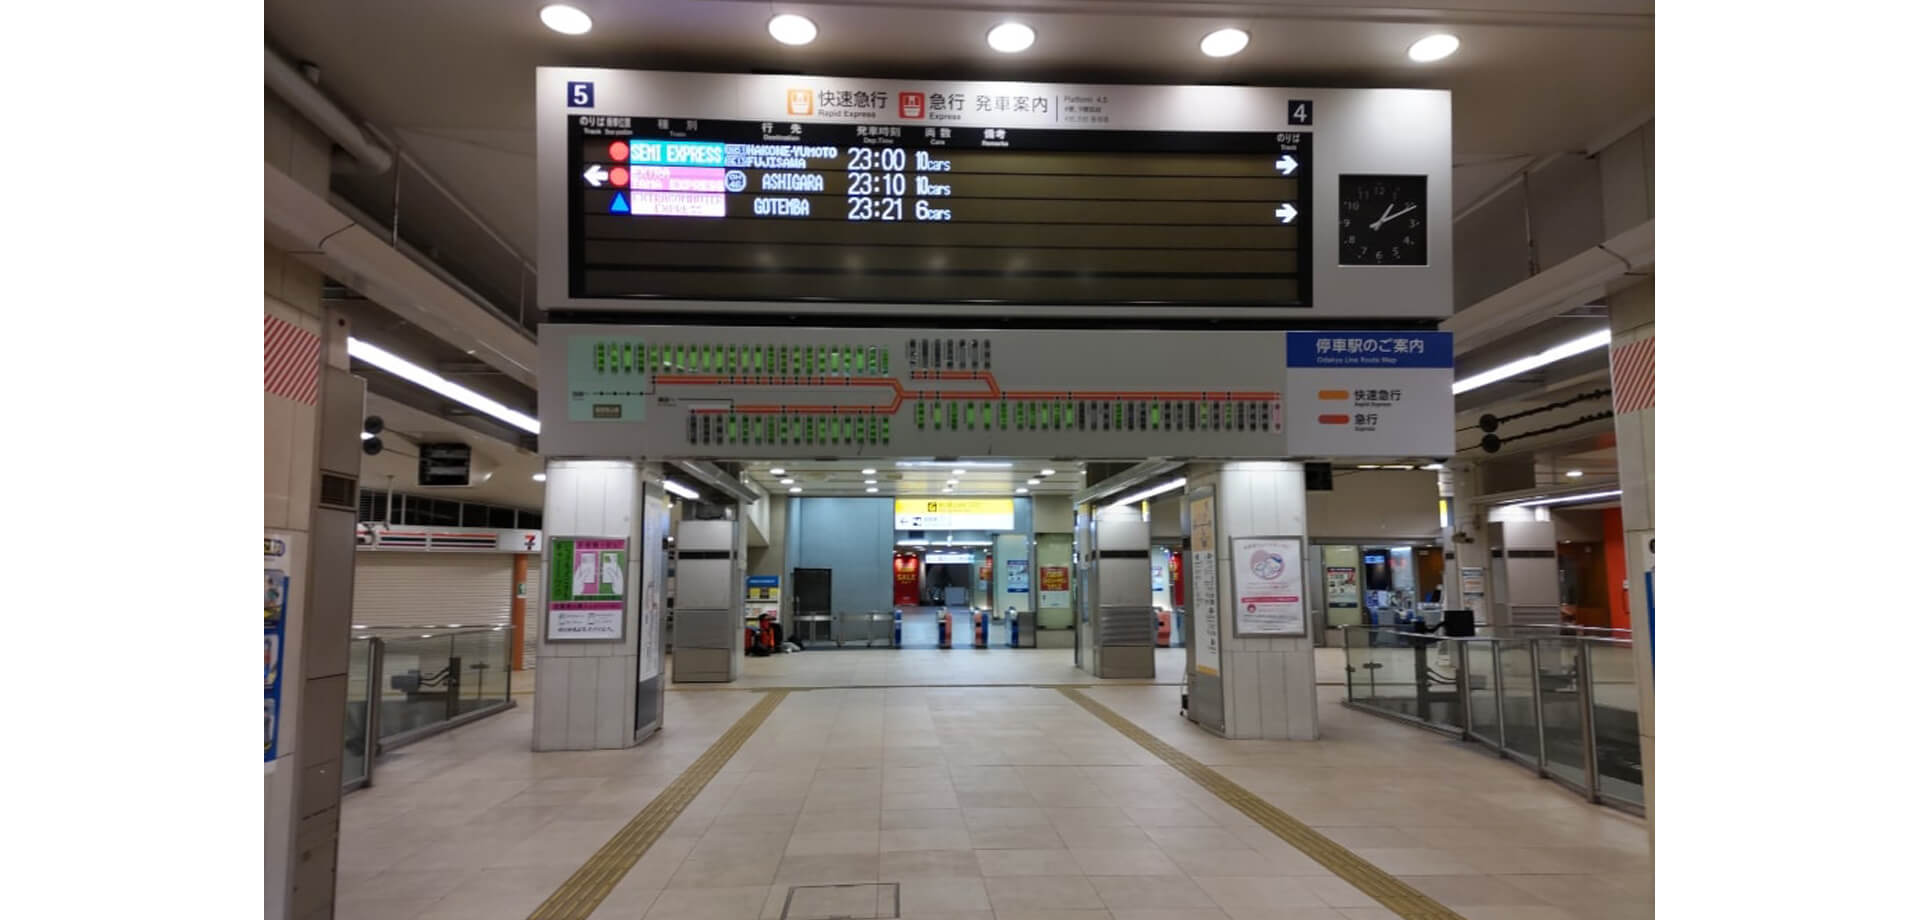 誰も知らない深夜の新宿駅ナイトツアー